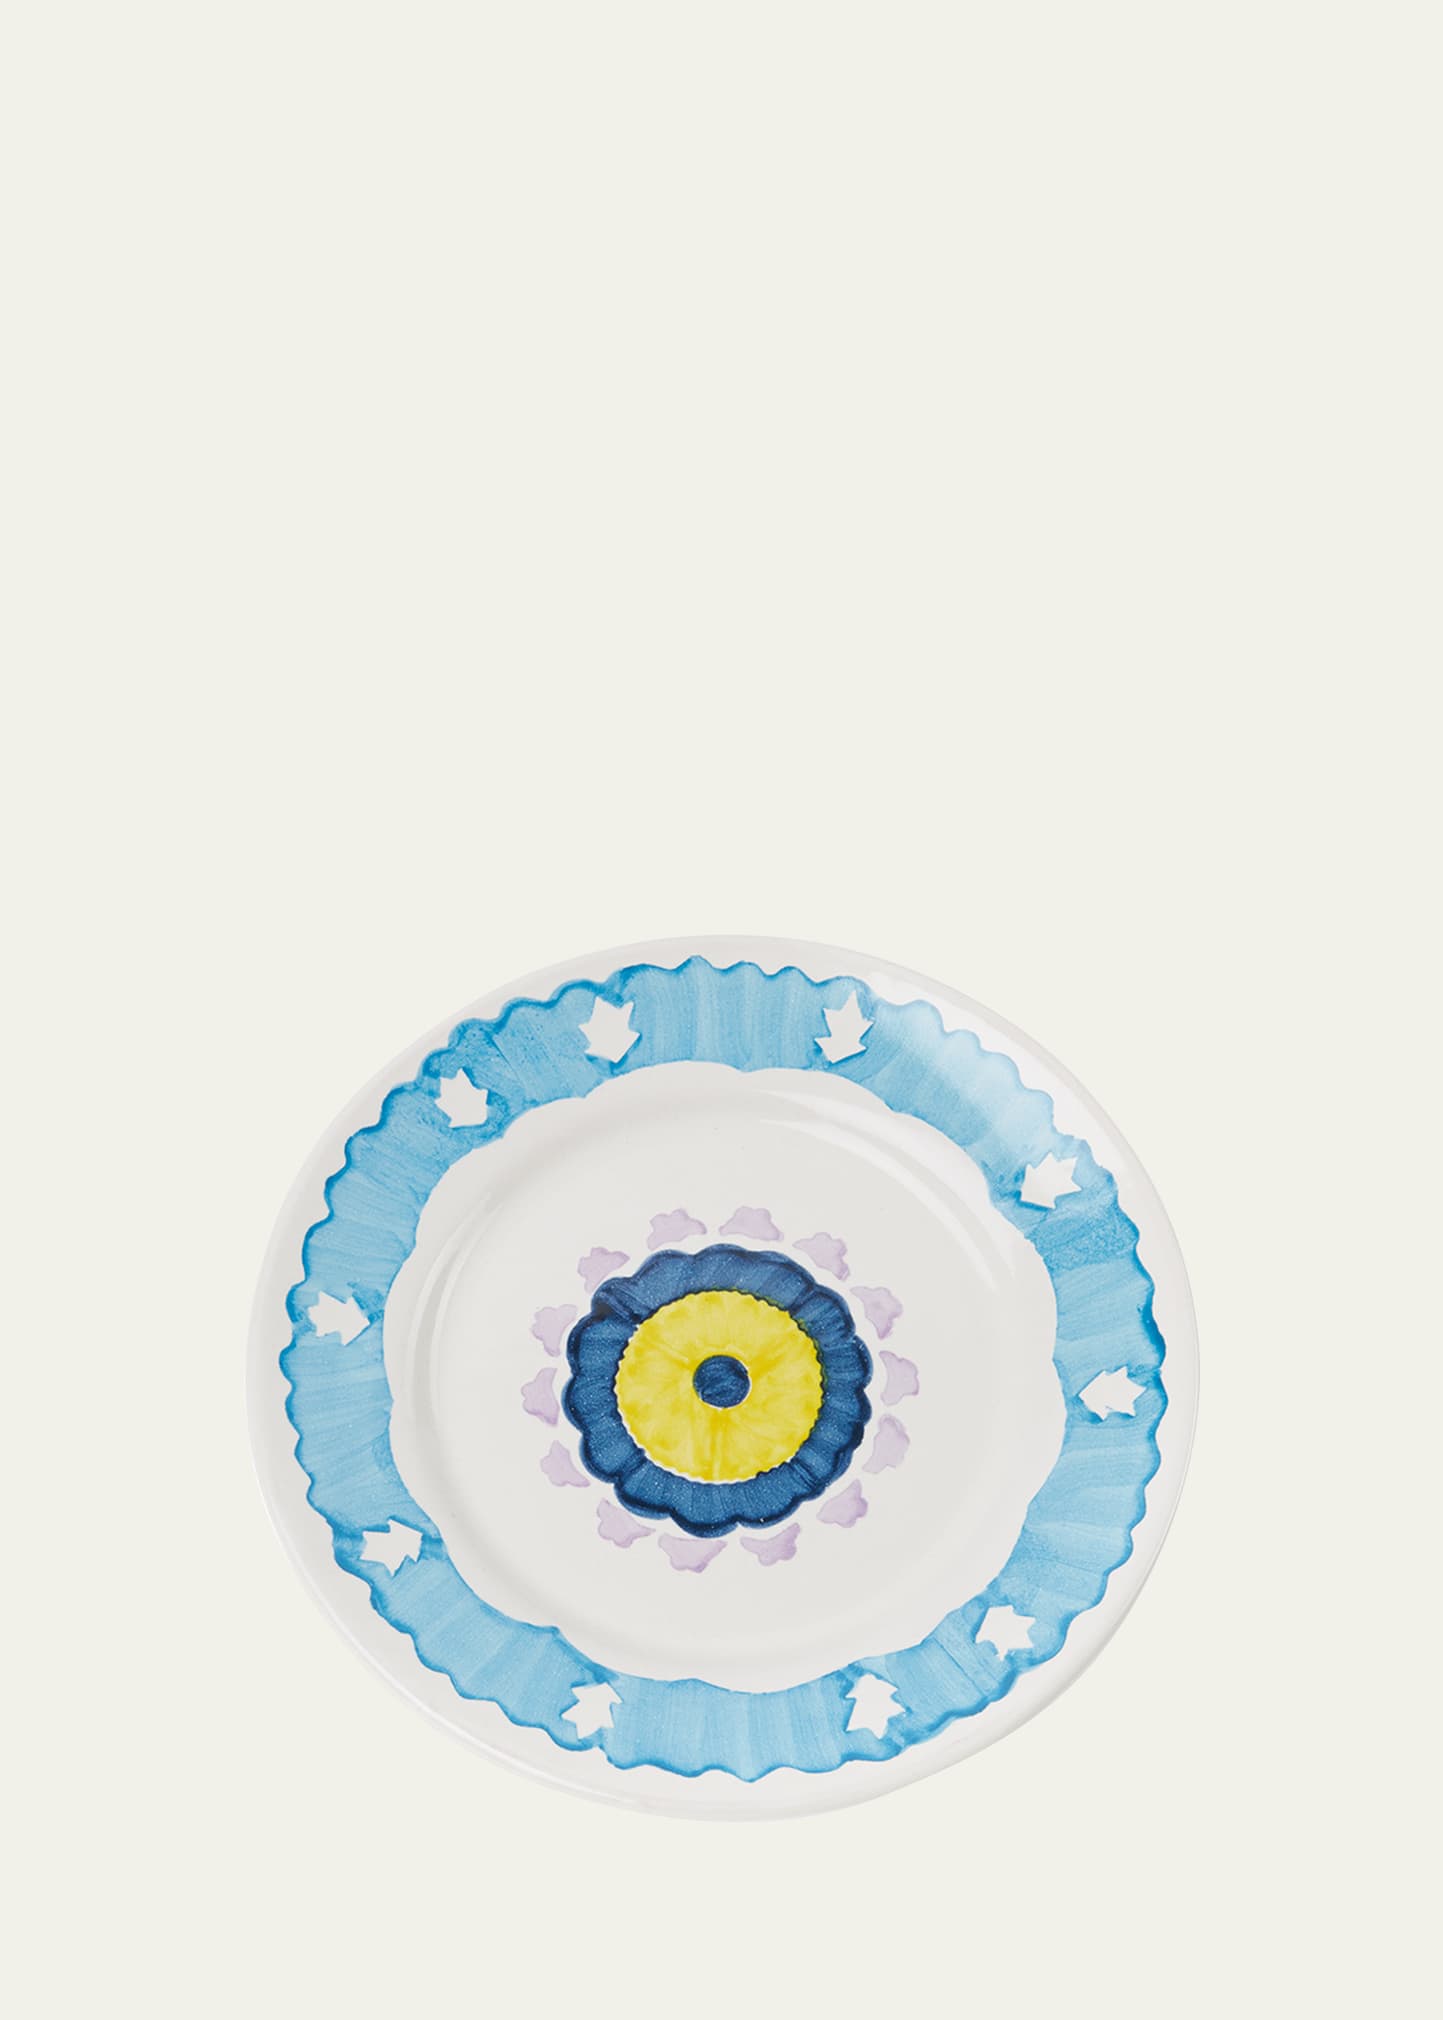 Emporio Sirenuse New Circle Dessert Plate In White Blue